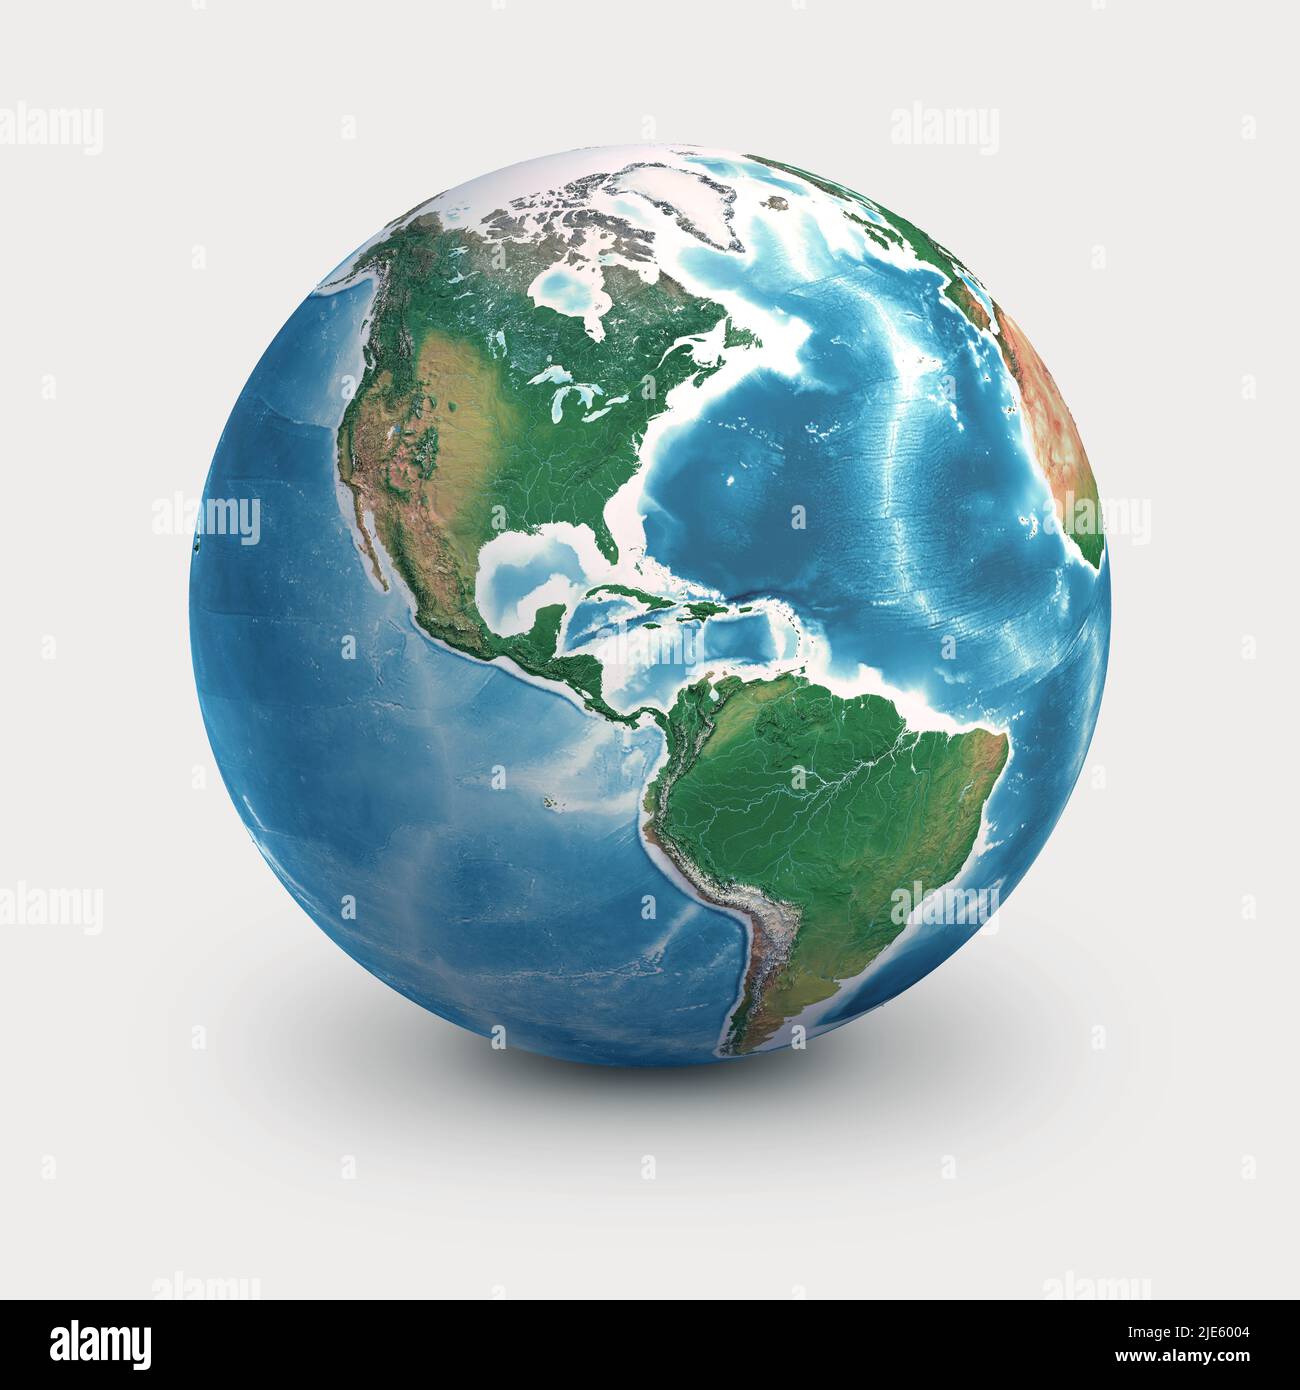 Physischer Erdglobus, der sich auf Nord- und Südamerika konzentriert. Planet Erde, isoliert auf Weiß - 3D Abbildung, Elemente dieses Bildes von der NASA. Stockfoto